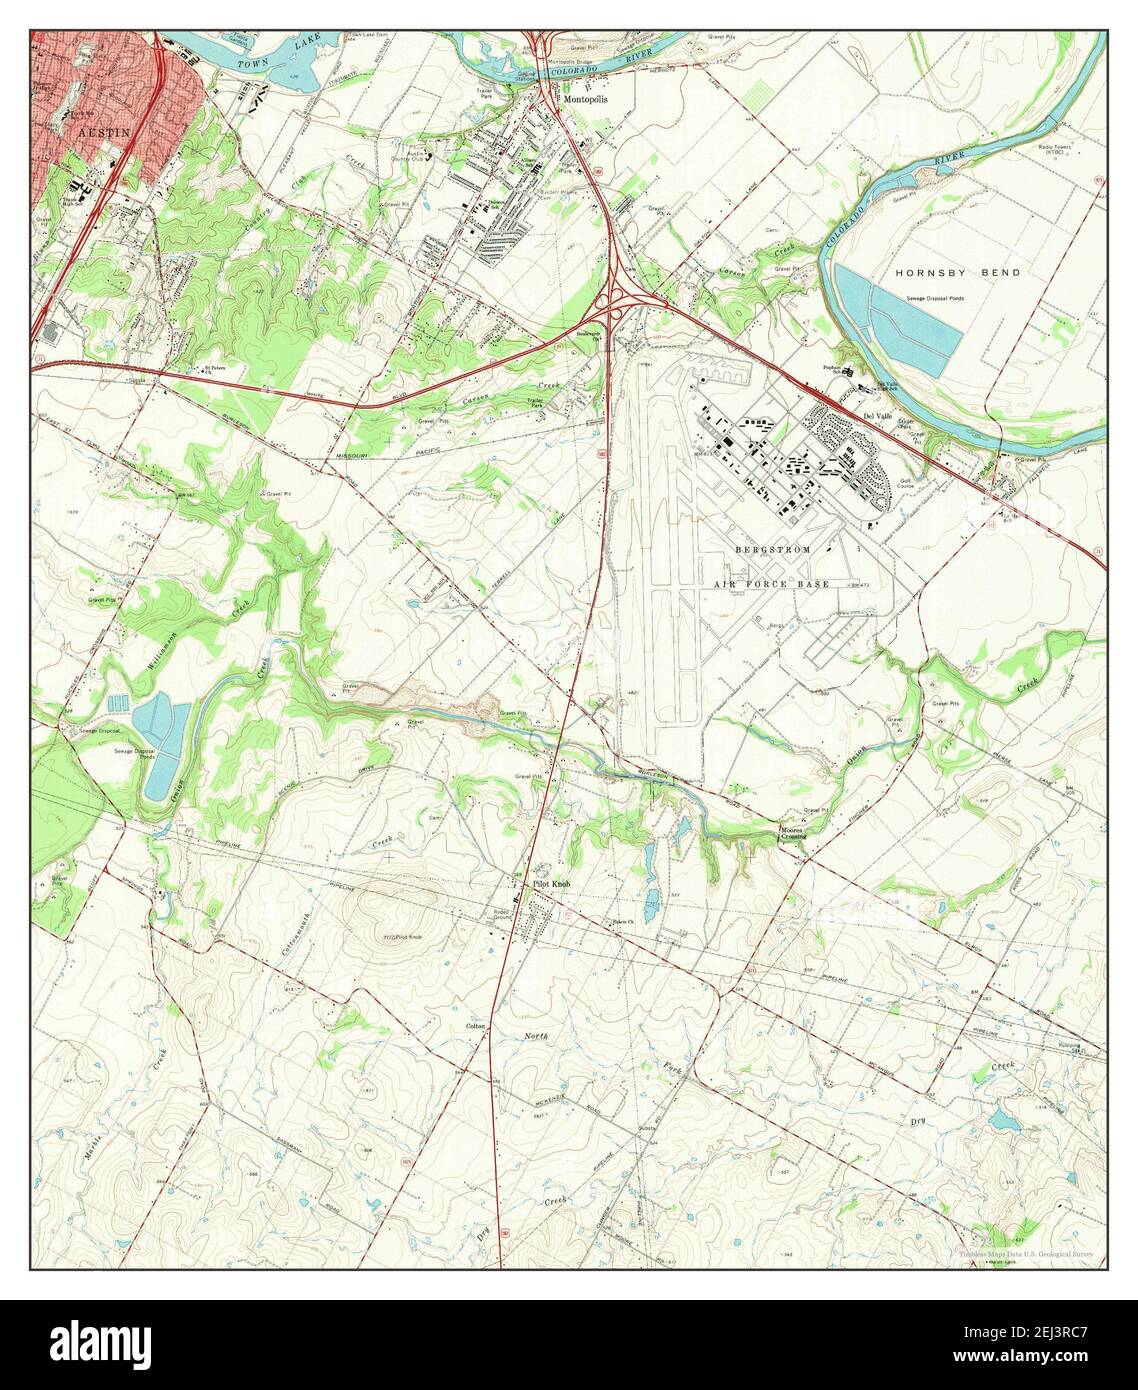 Montopolis, Texas, Karte 1966, 1:24000, Vereinigte Staaten von Amerika von Timeless Maps, Daten U.S. Geological Survey Stockfoto